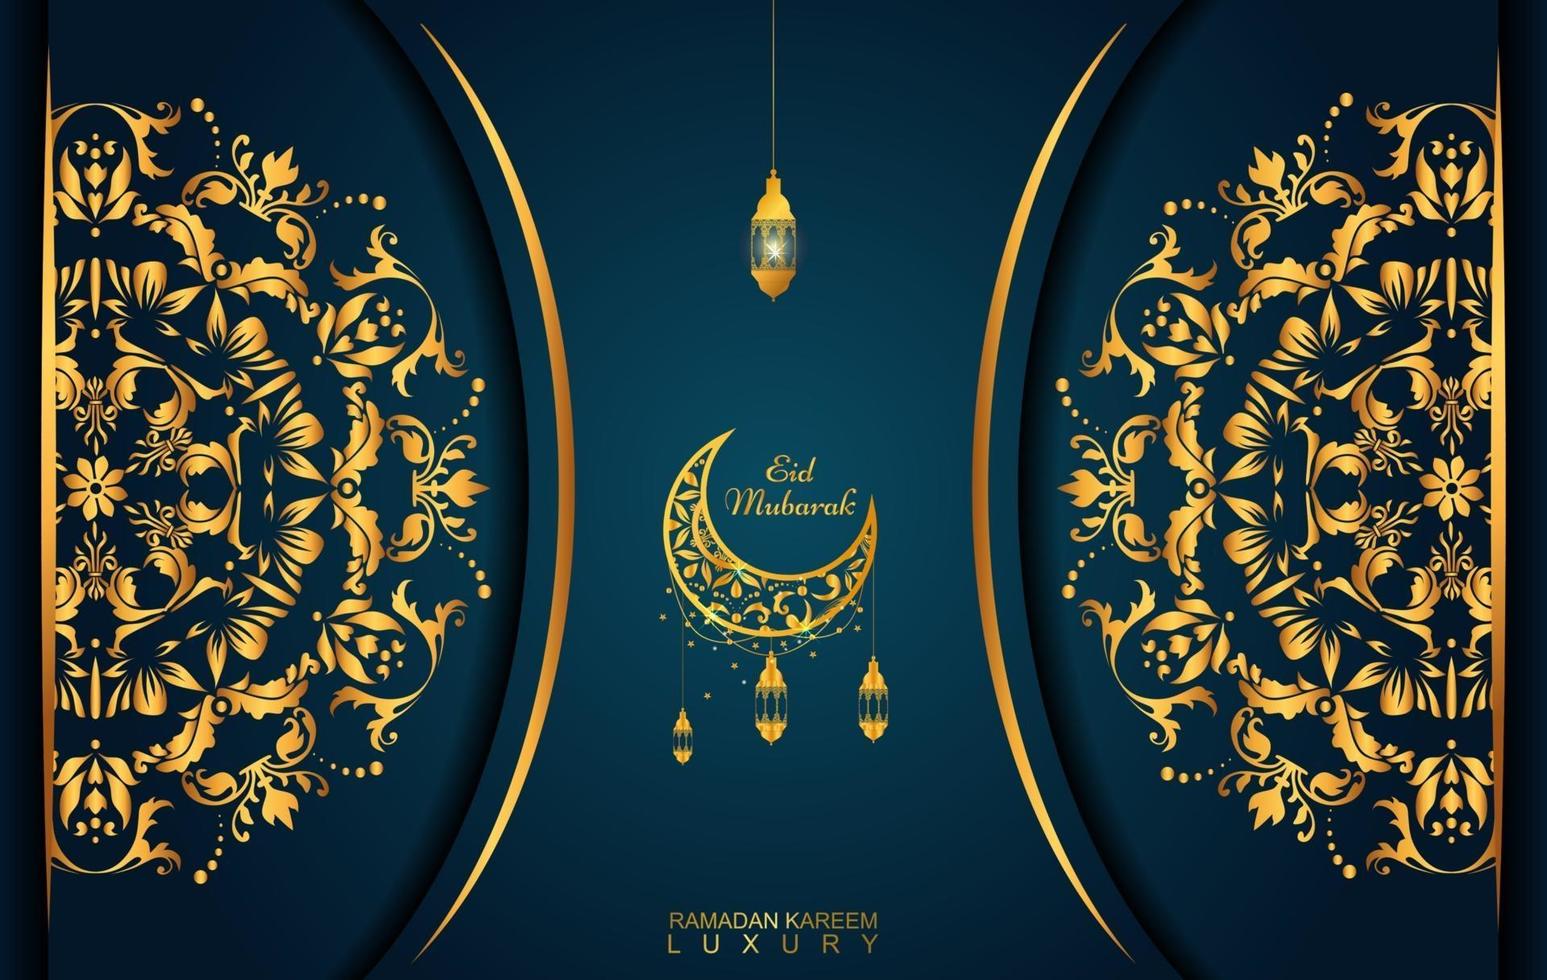 Ramadan Kareem em estilo de luxo com caligrafia árabe. Mandala dourada de luxo em fundo azul escuro vetor